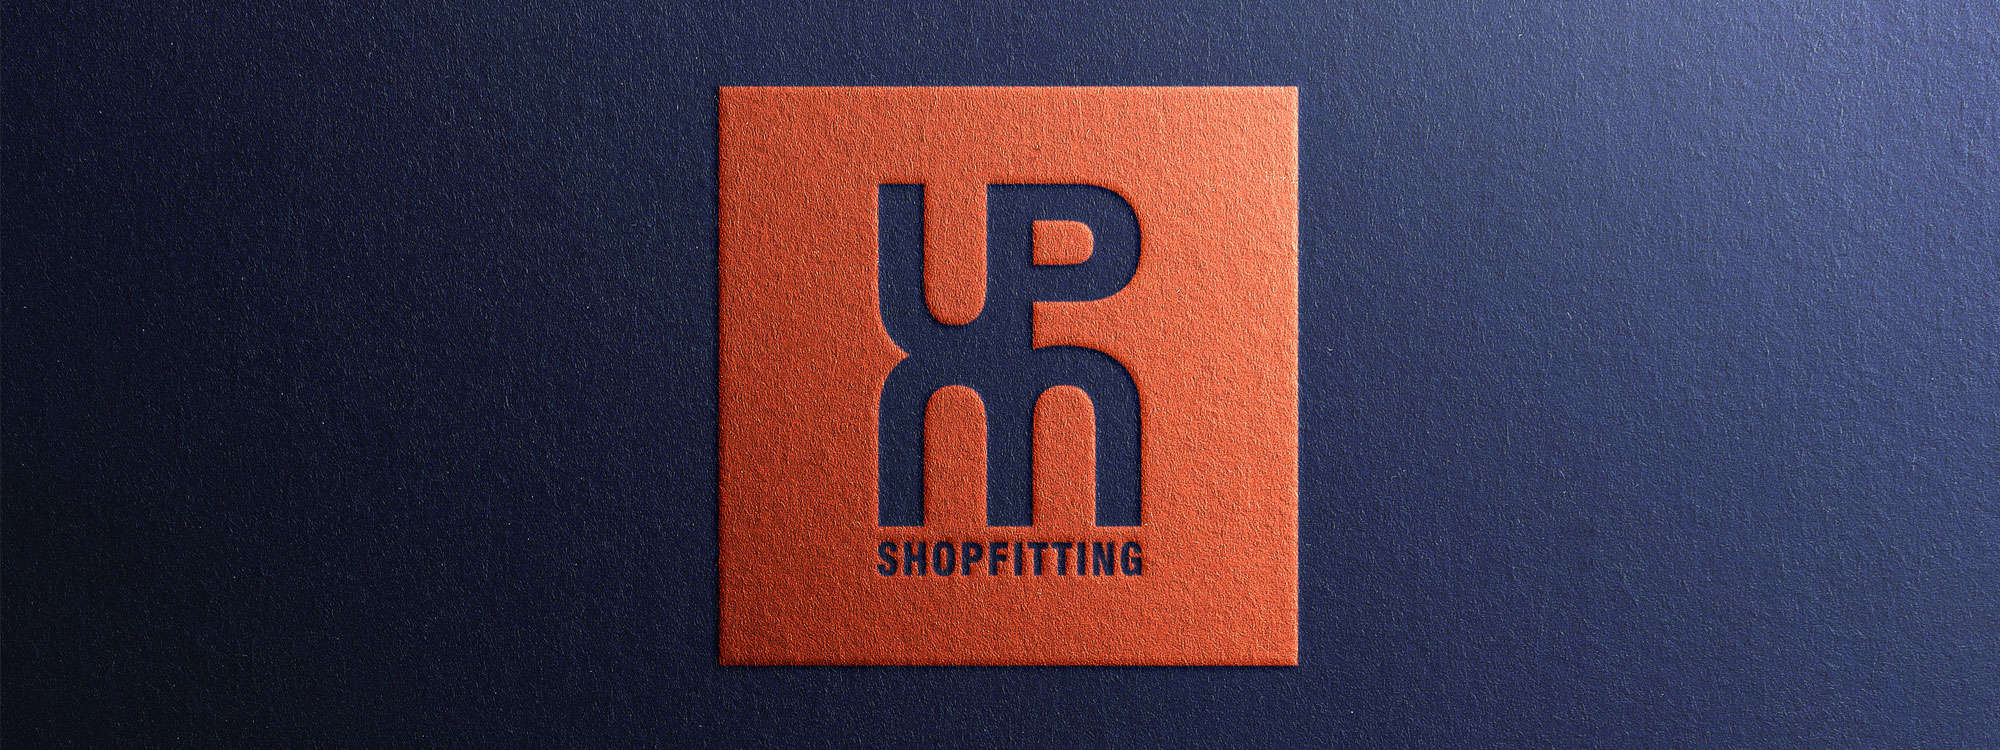 Logo Design Stourbridge